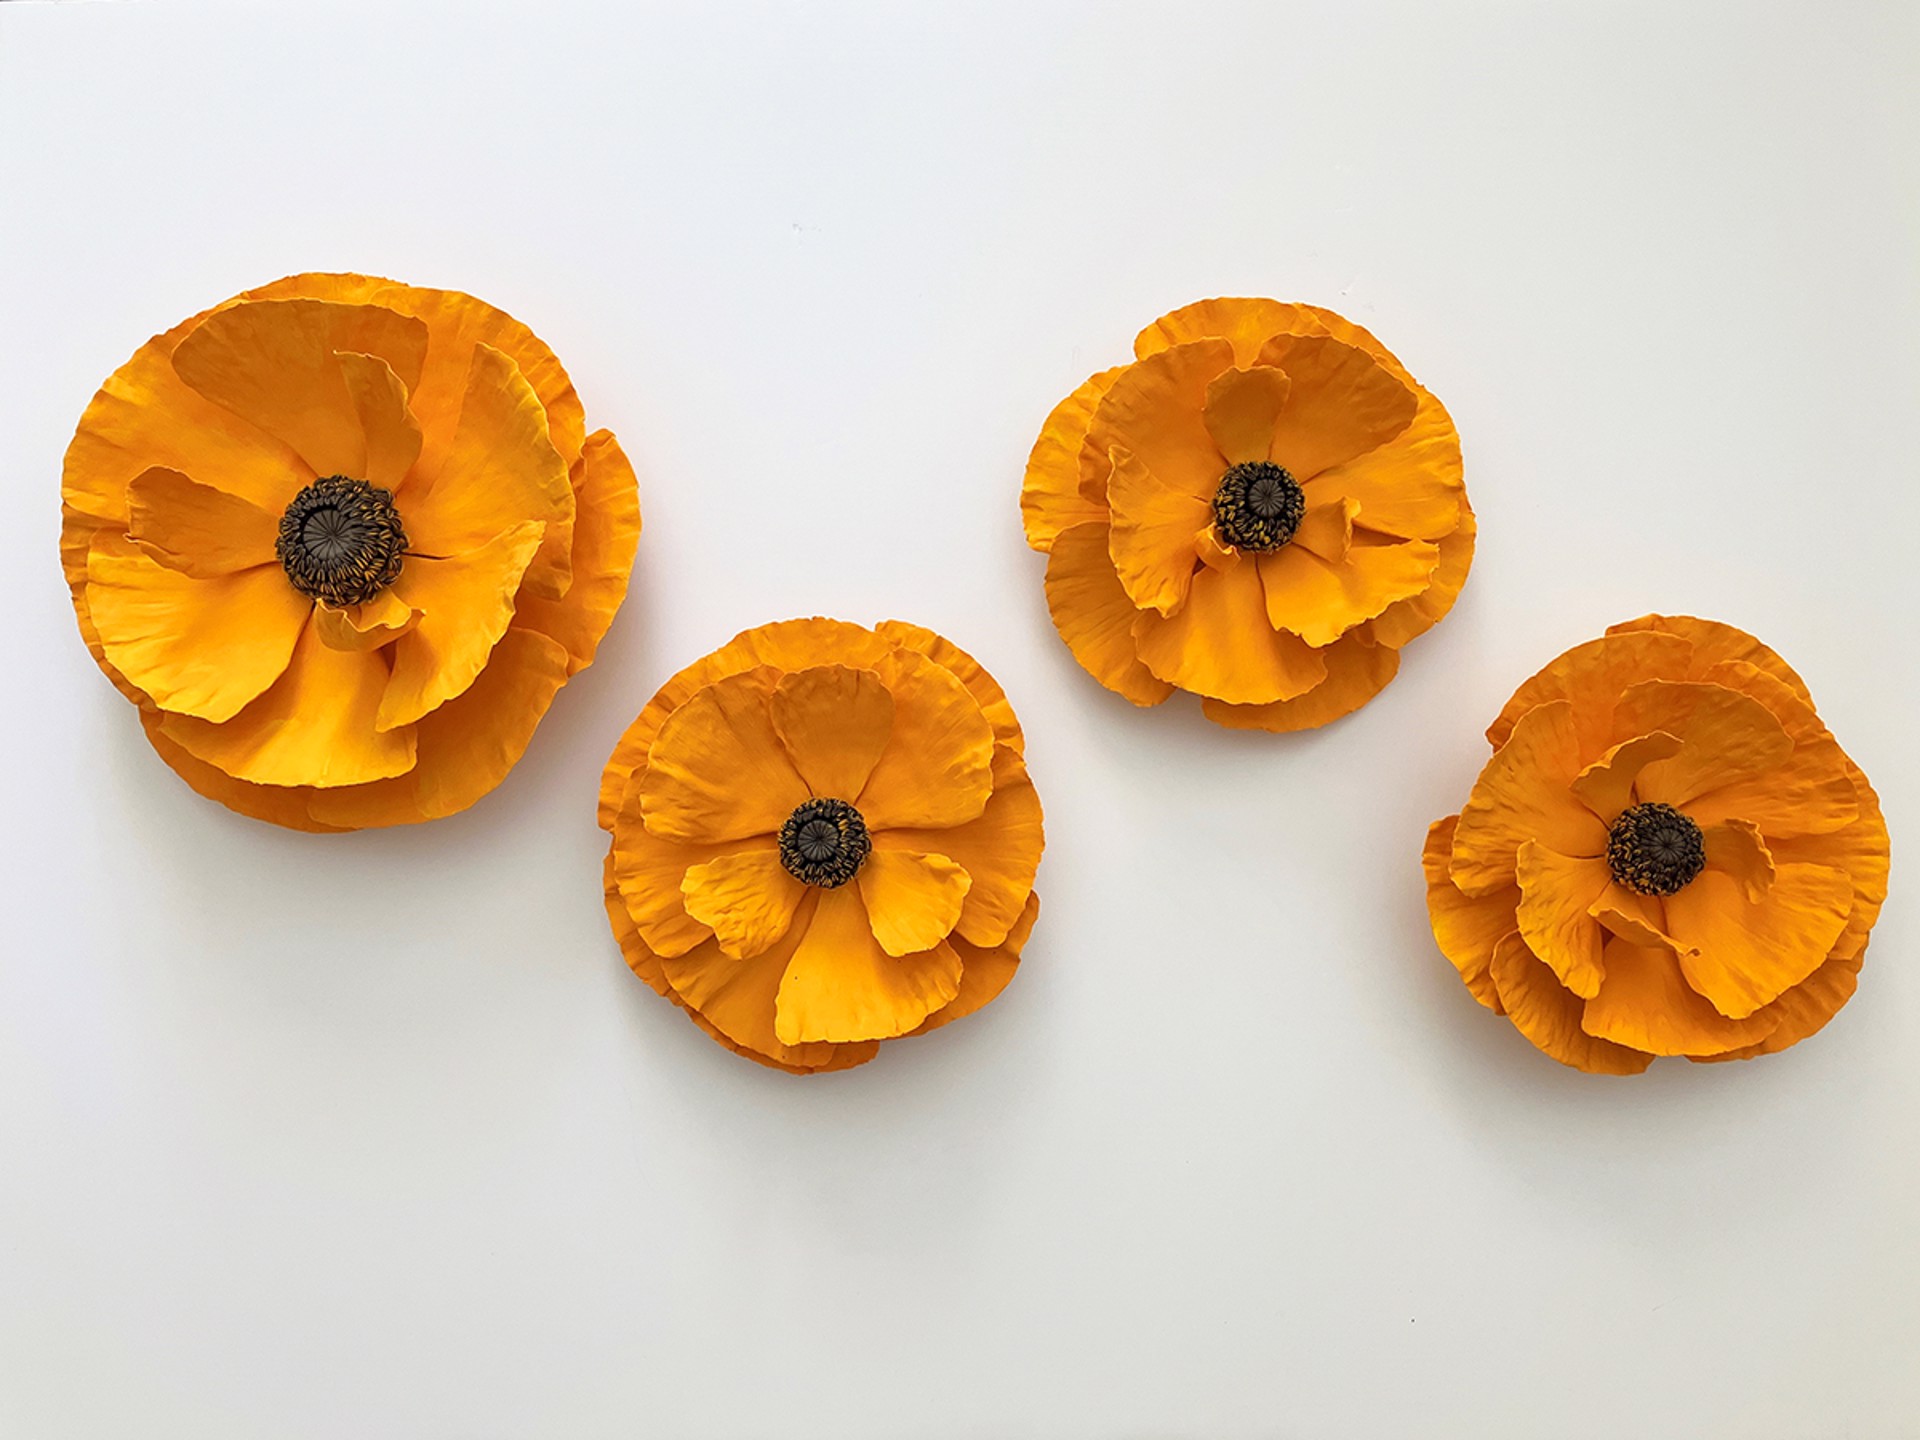 Orange Poppies by Owen Mann